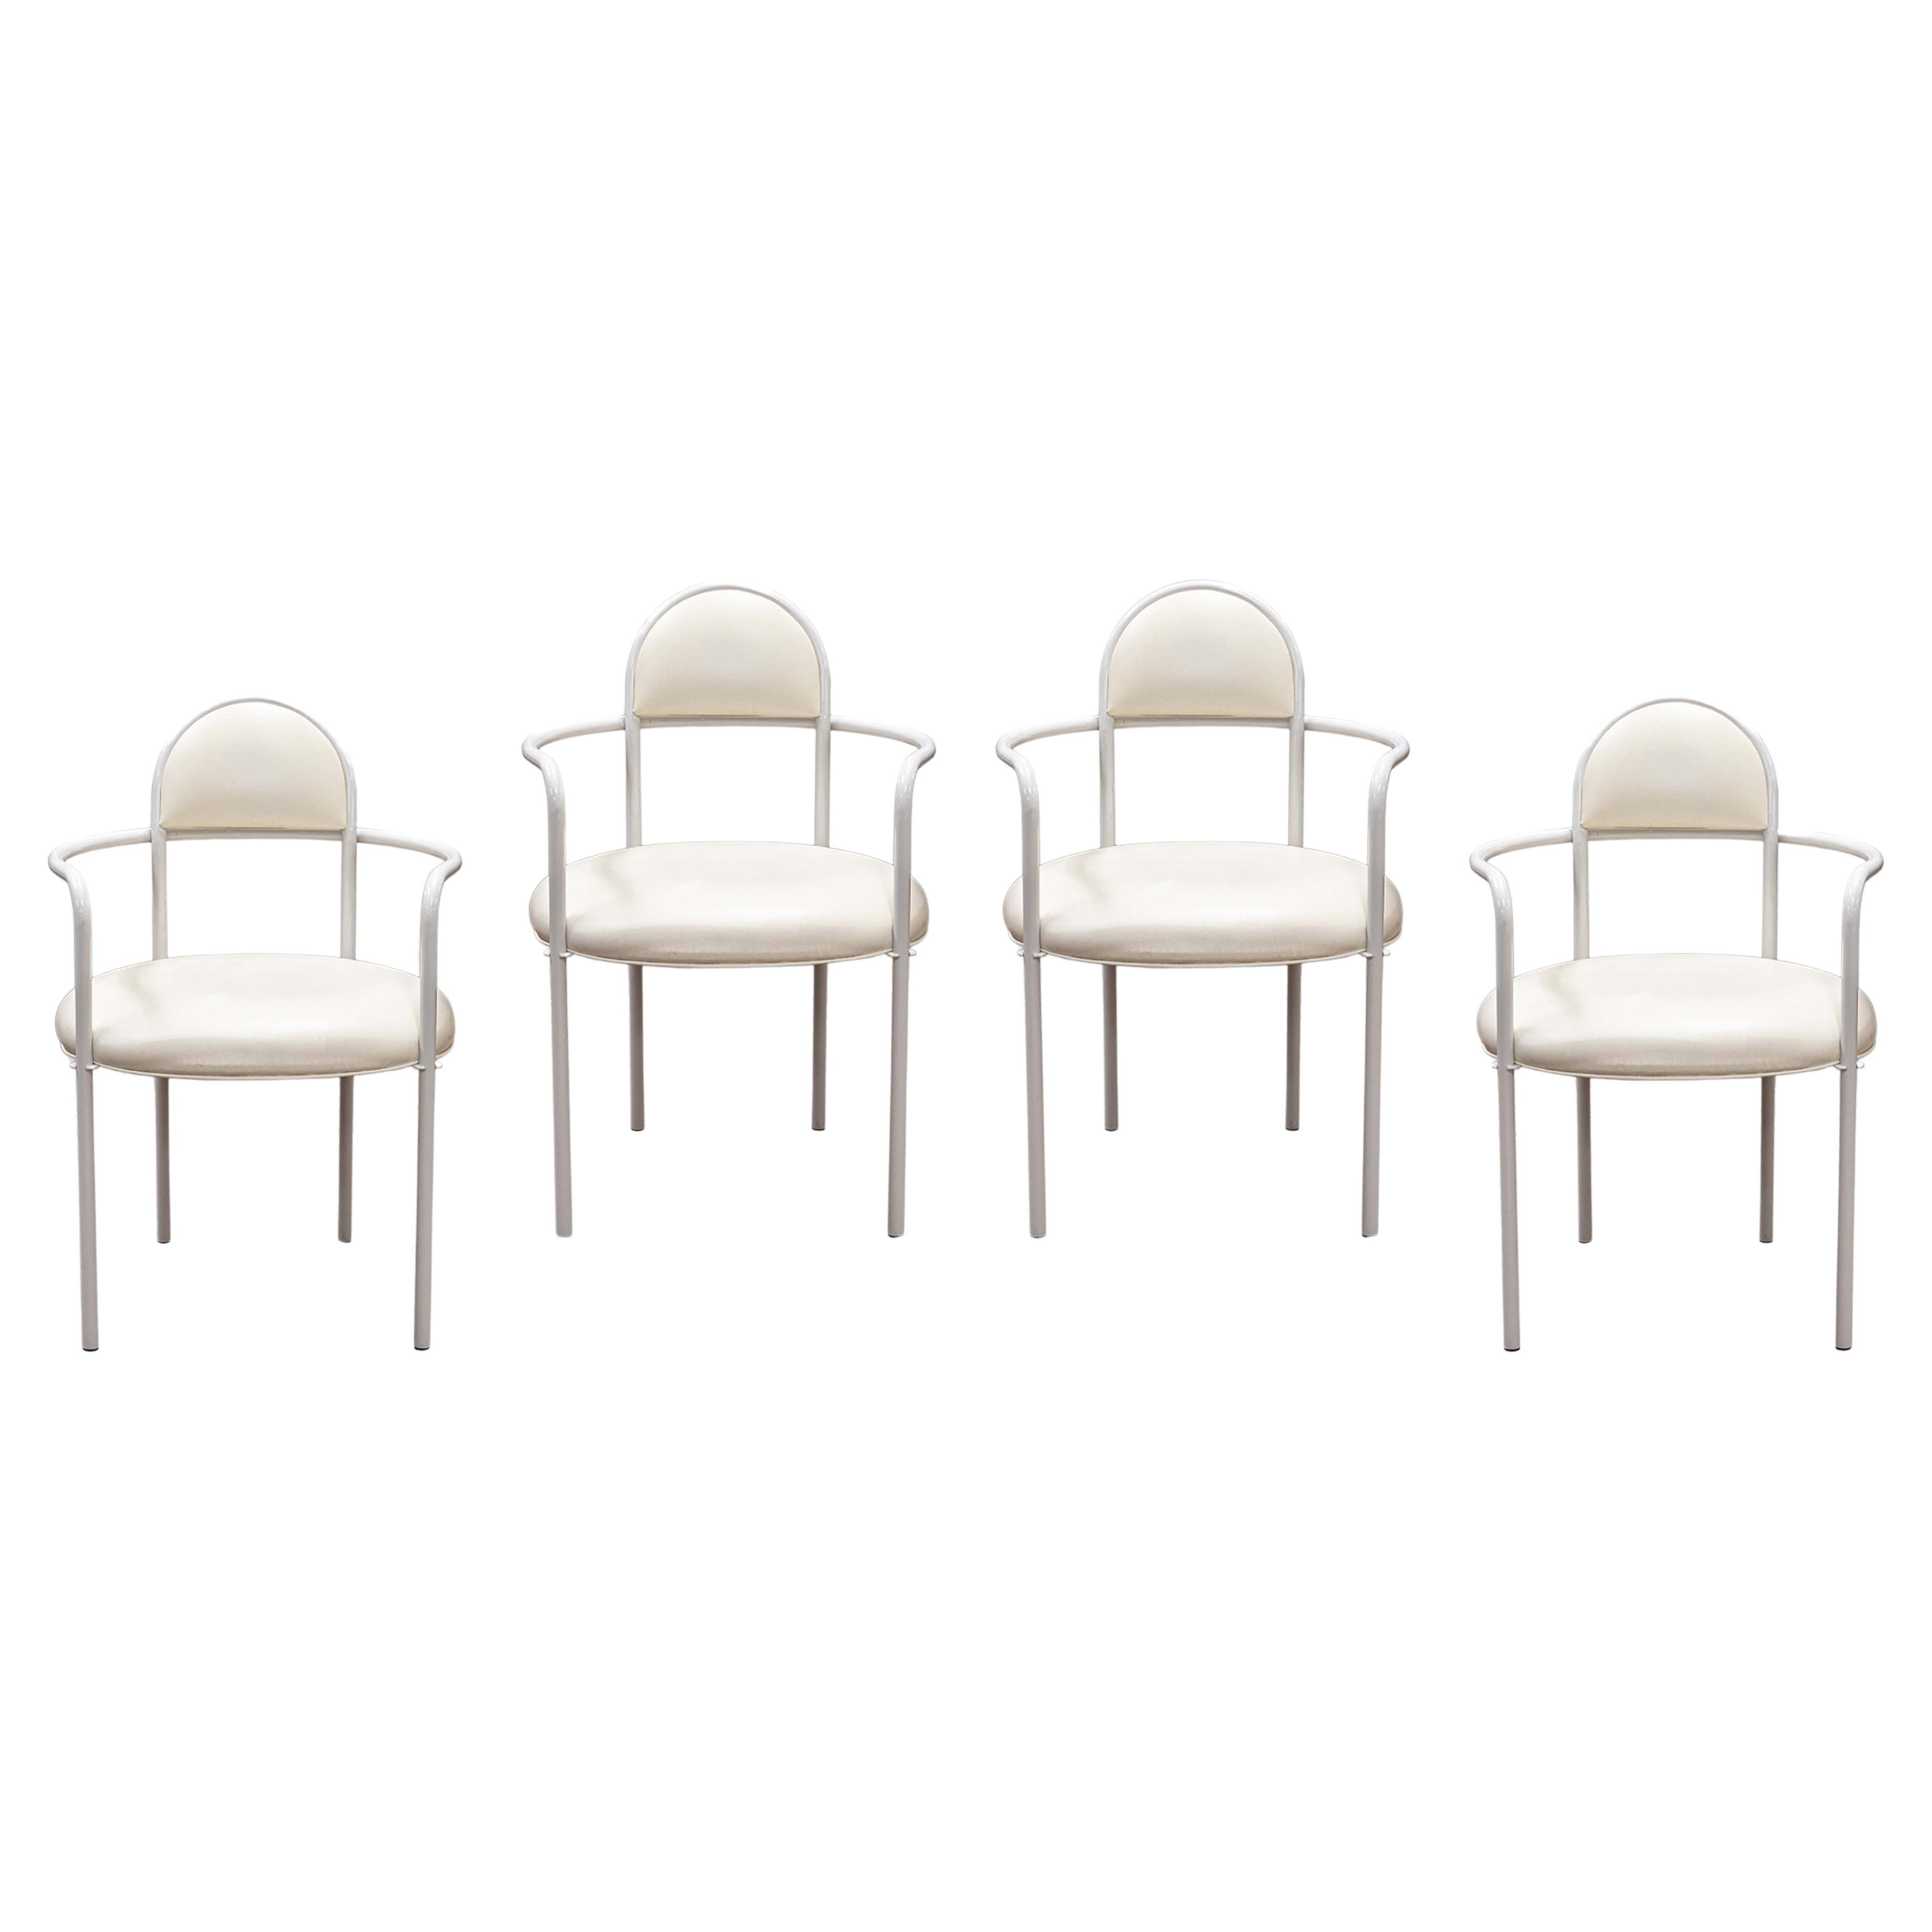 Bieffeplast Chairs